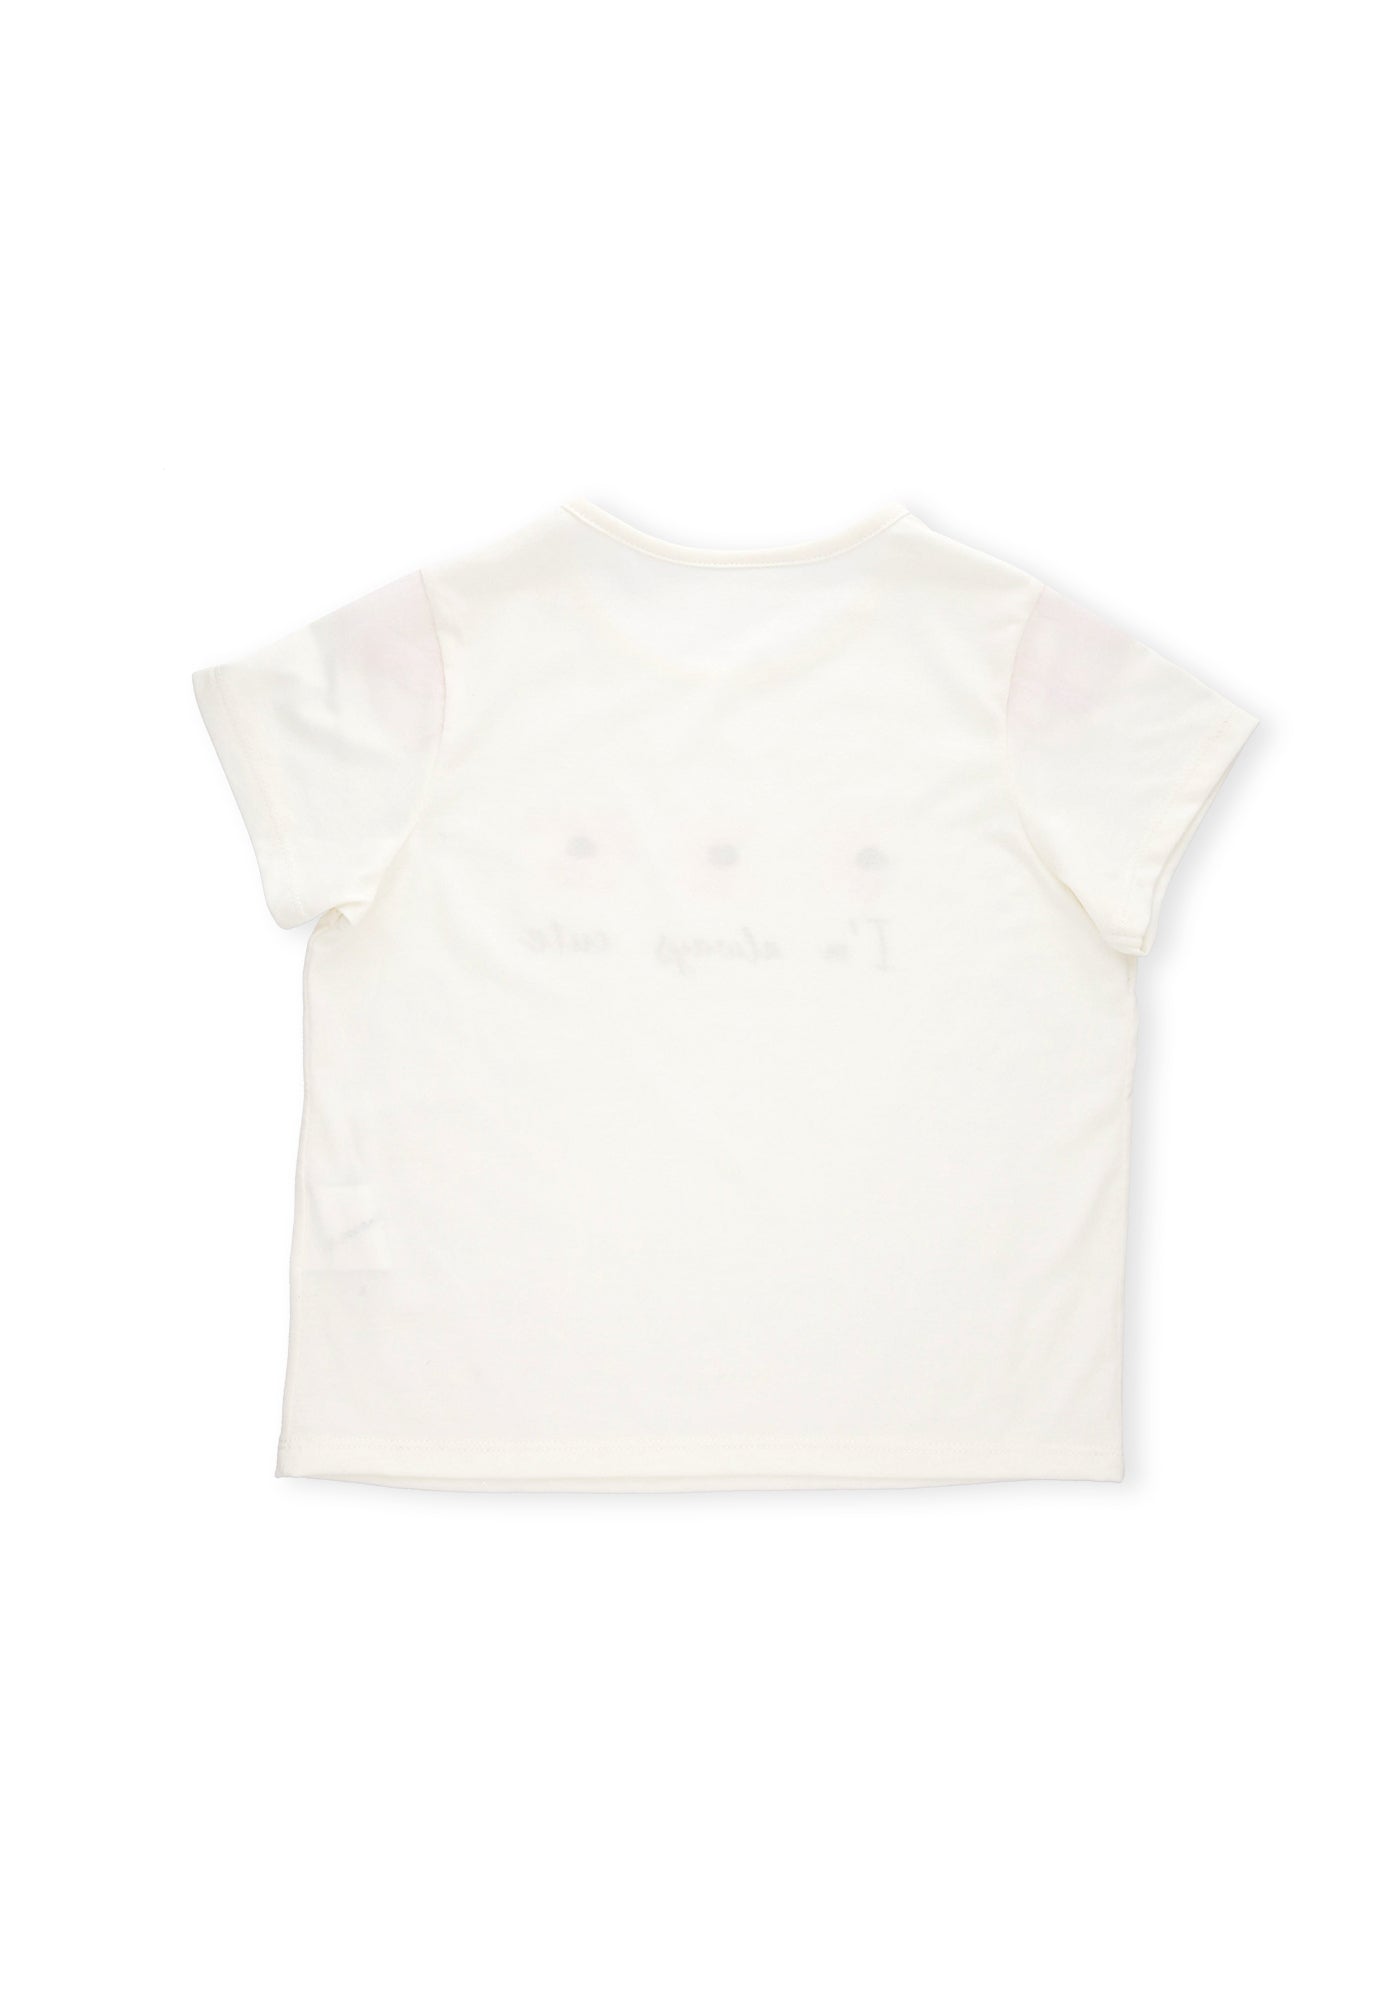 Conjunto de camiseta ivory estampada manga corta y pantalón rosado para bebé niña